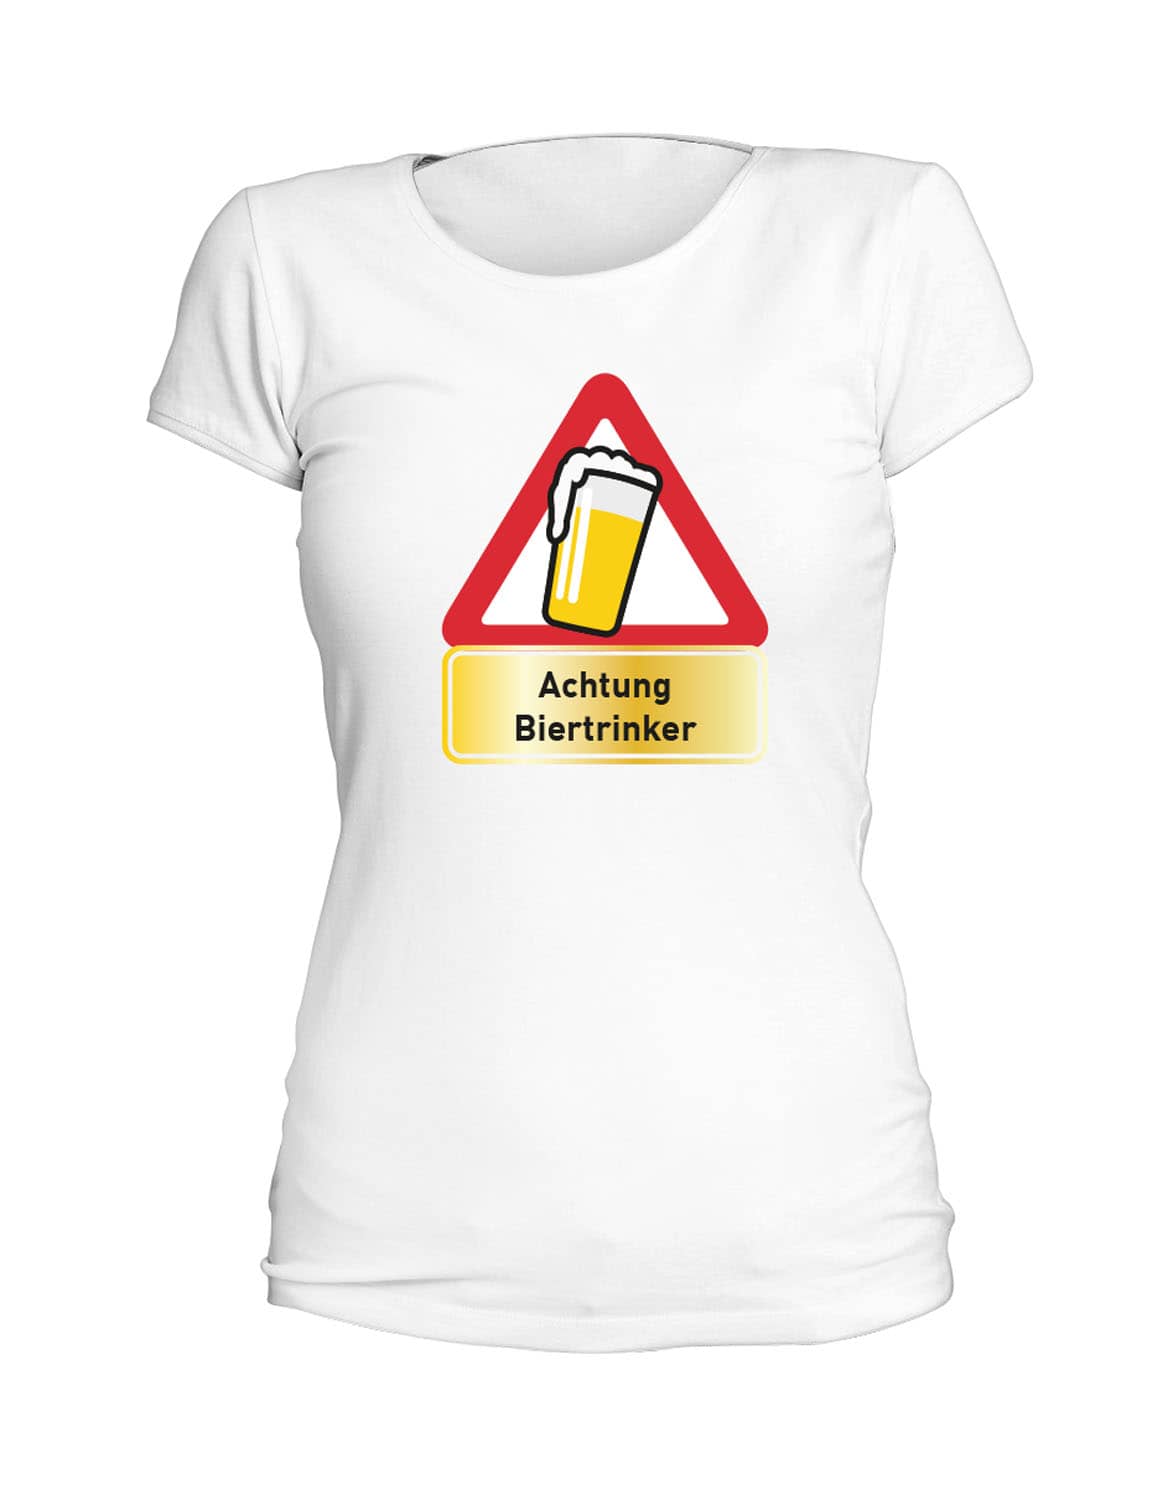 T-Shirt "Achtung Biertrinker" - Damen